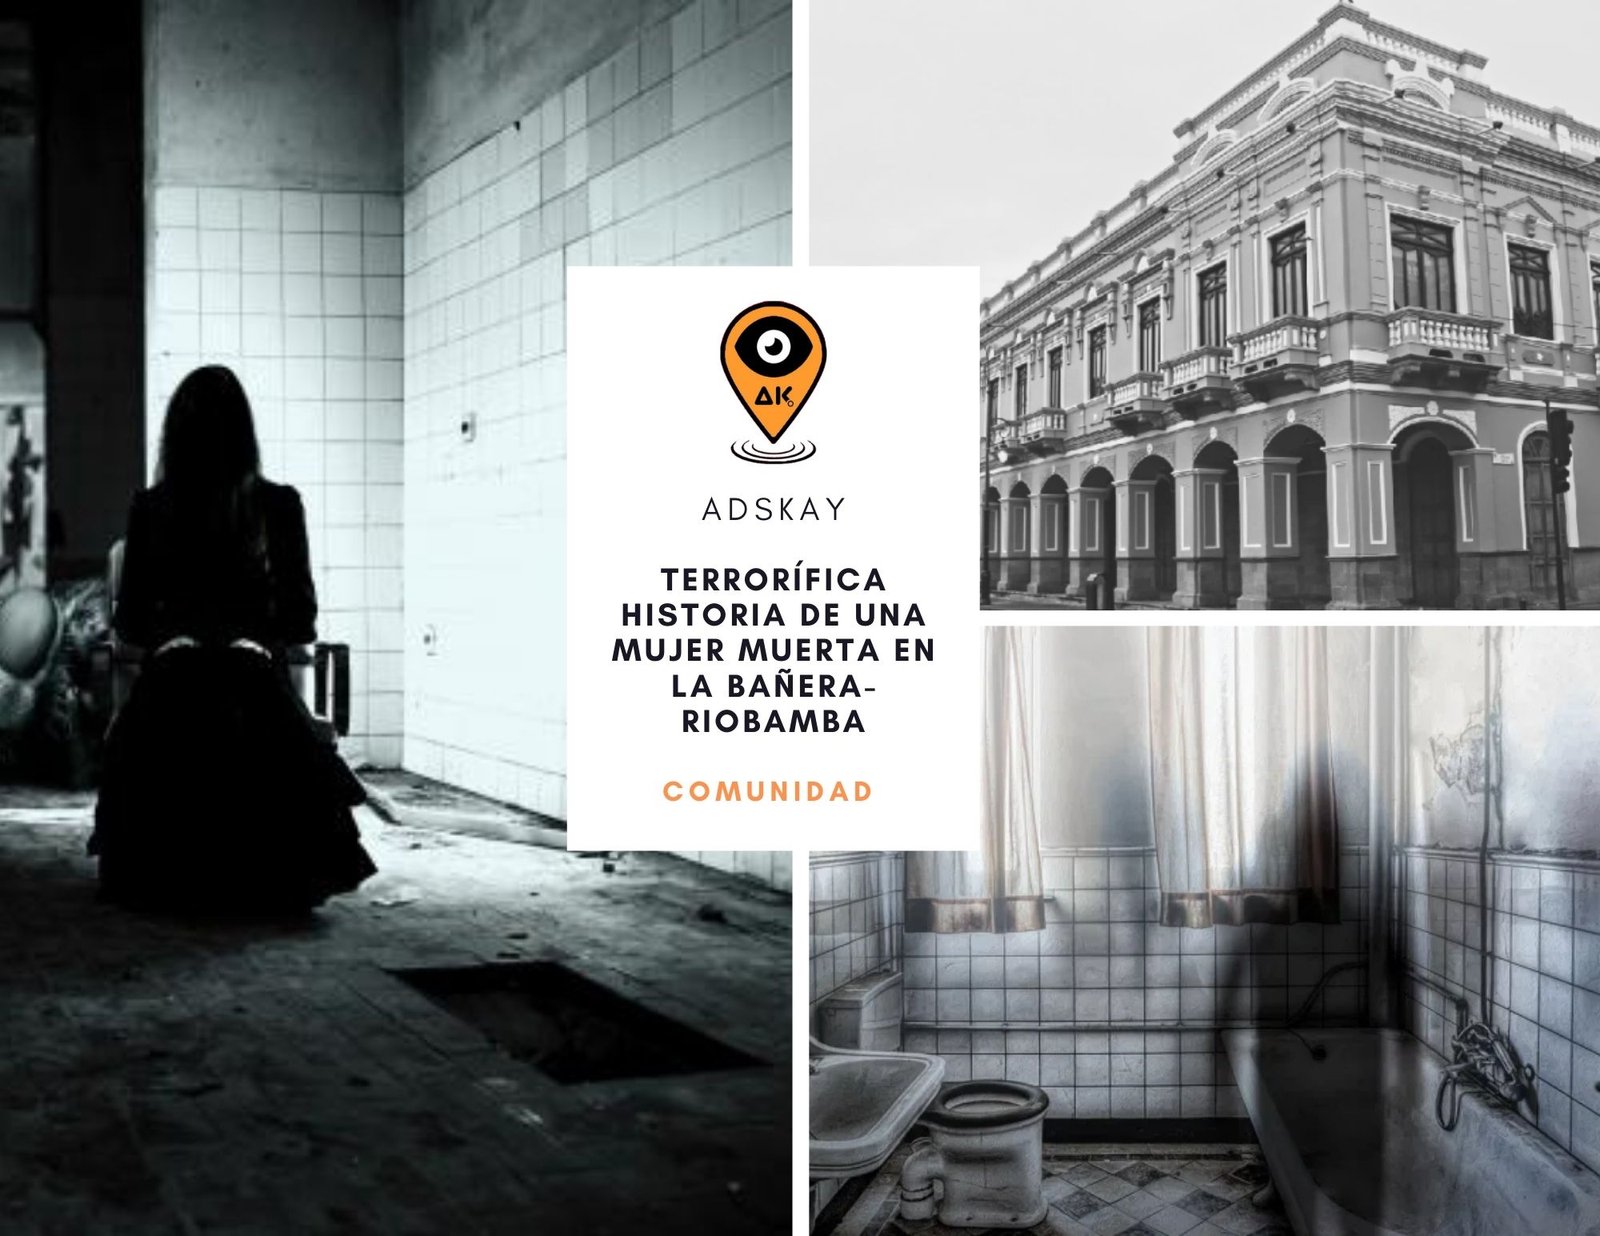 La Terrorífica historia de una mujer muerta en la bañera en Riobamba